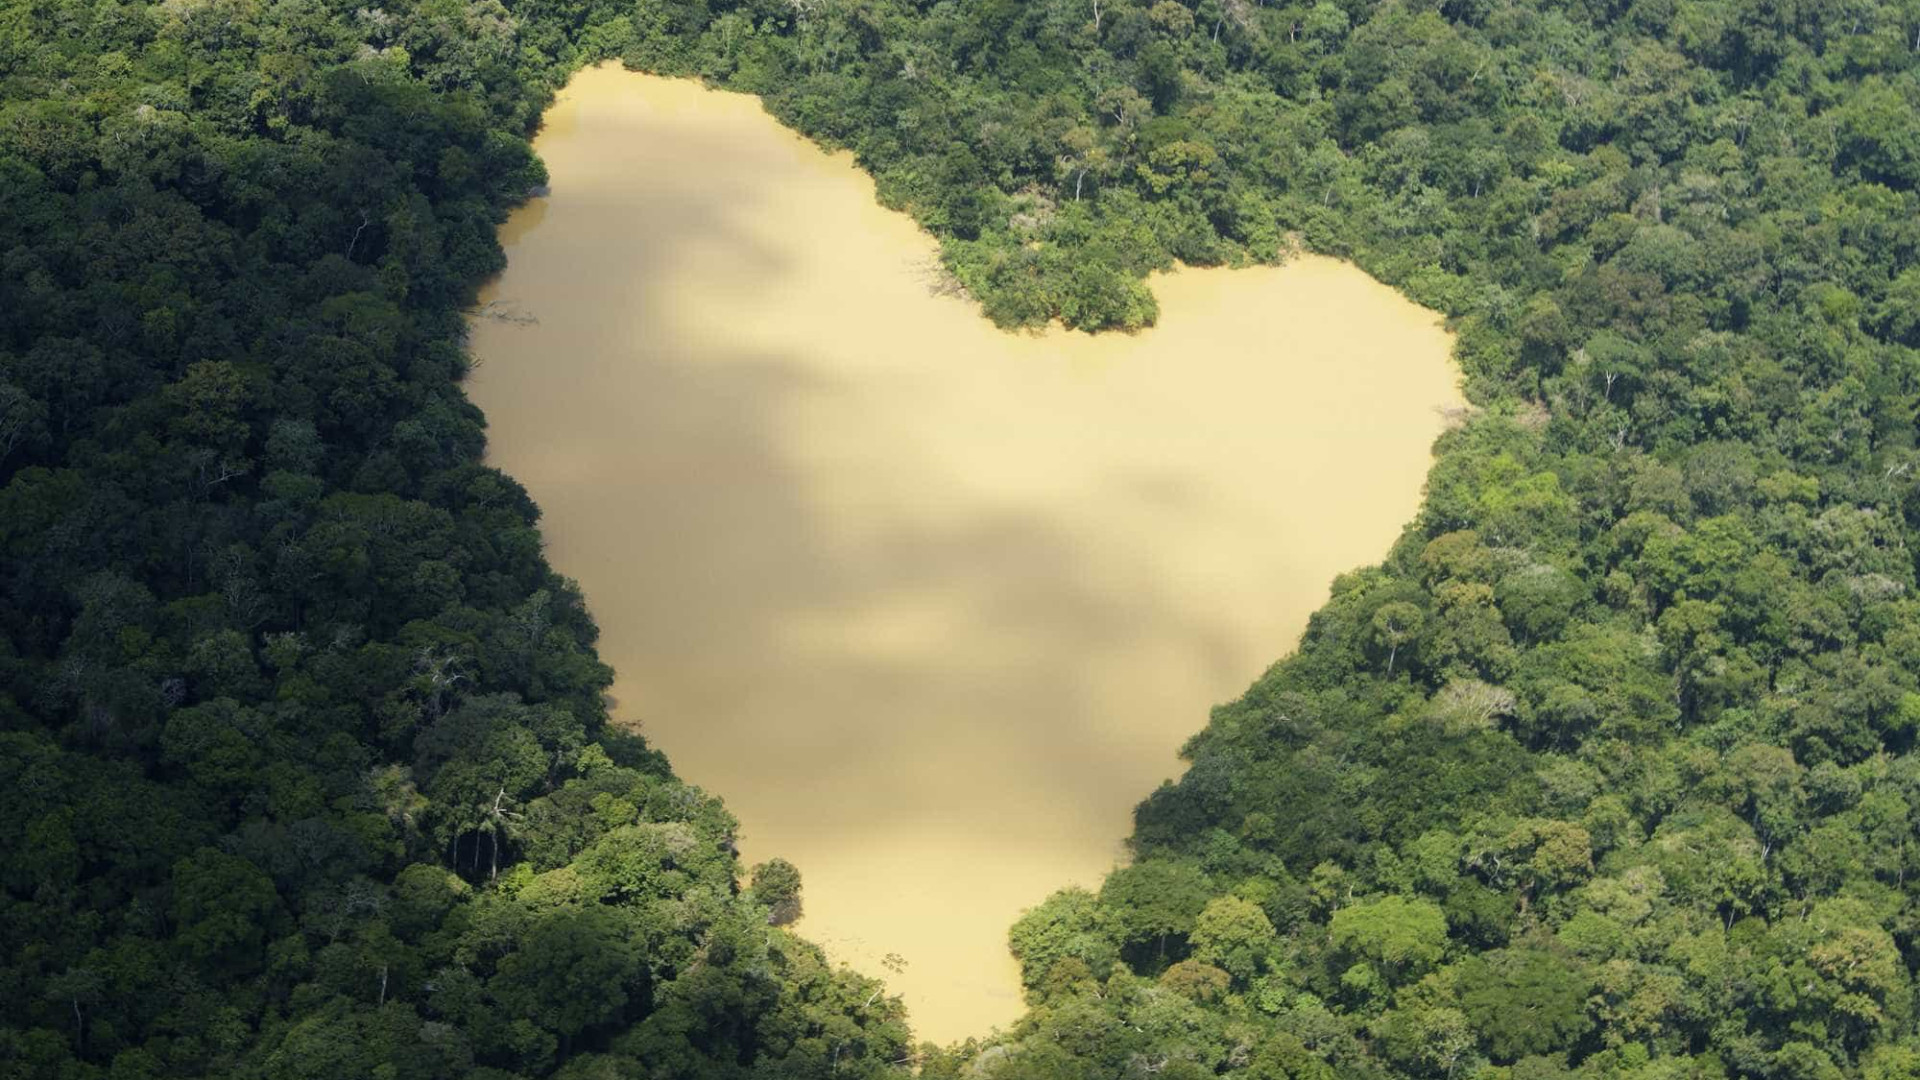 Reserva no Amazonas zera desmatamento e é considerada modelo